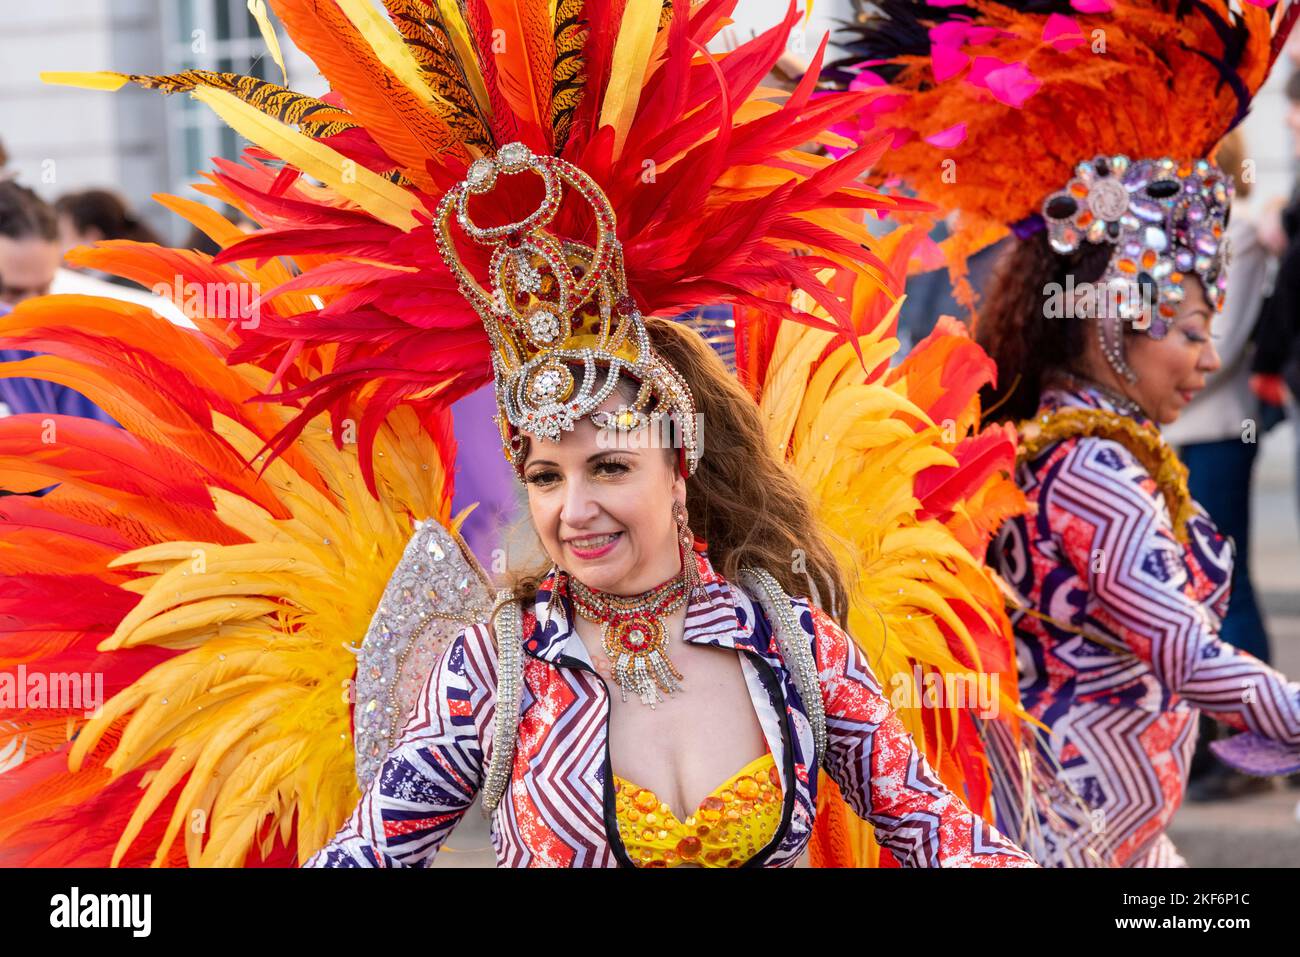 Mujer en traje de carnaval de plumas de pavo real bailando en show